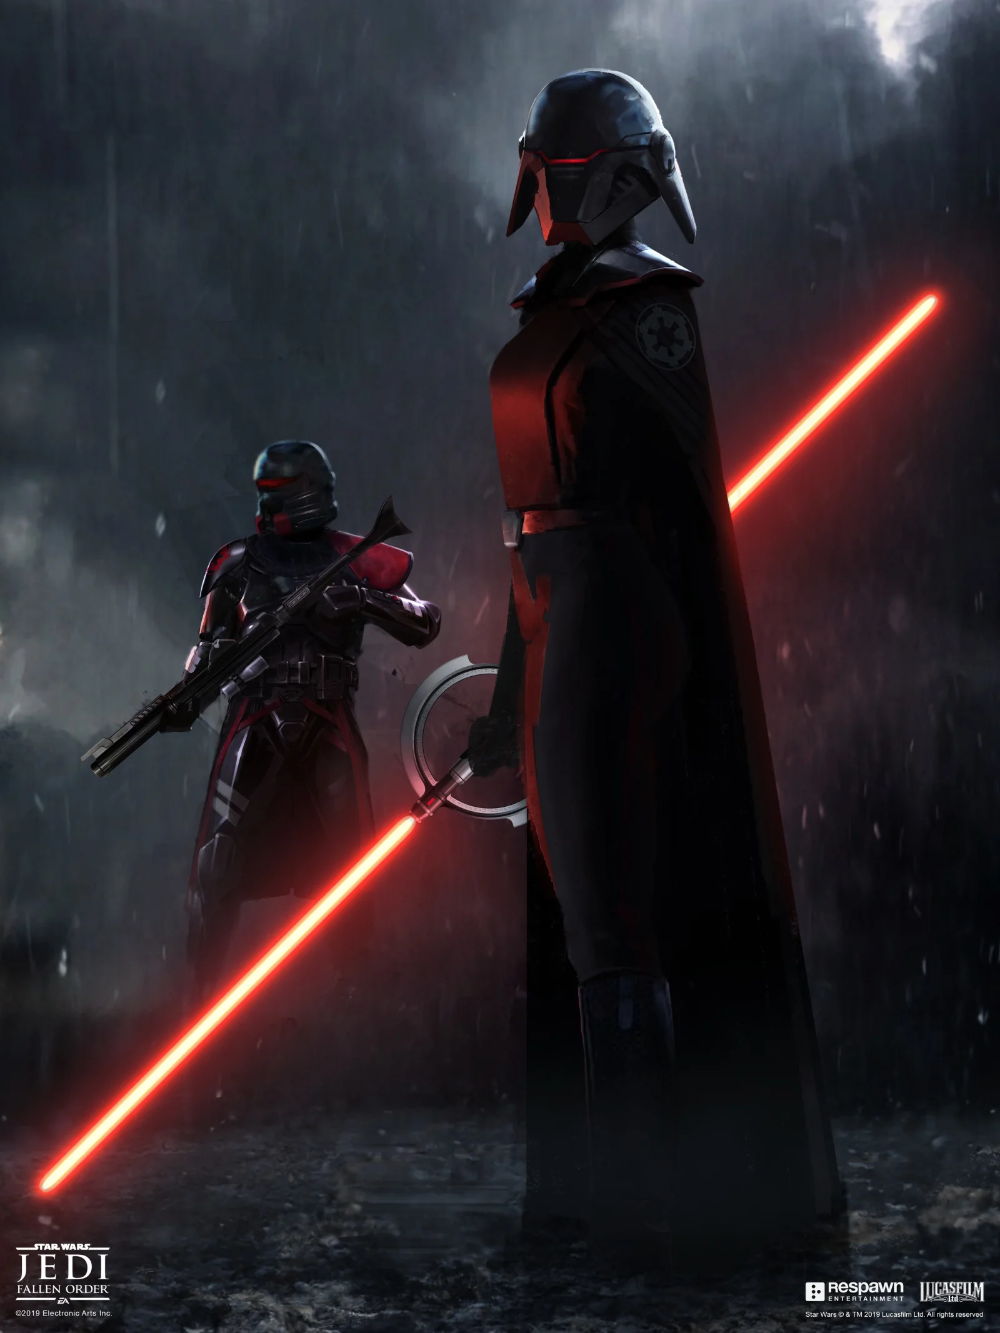 The Art Of Star Wars Jedi: Fallen Order. Star wars villains, Dark side star wars, Star wars sith